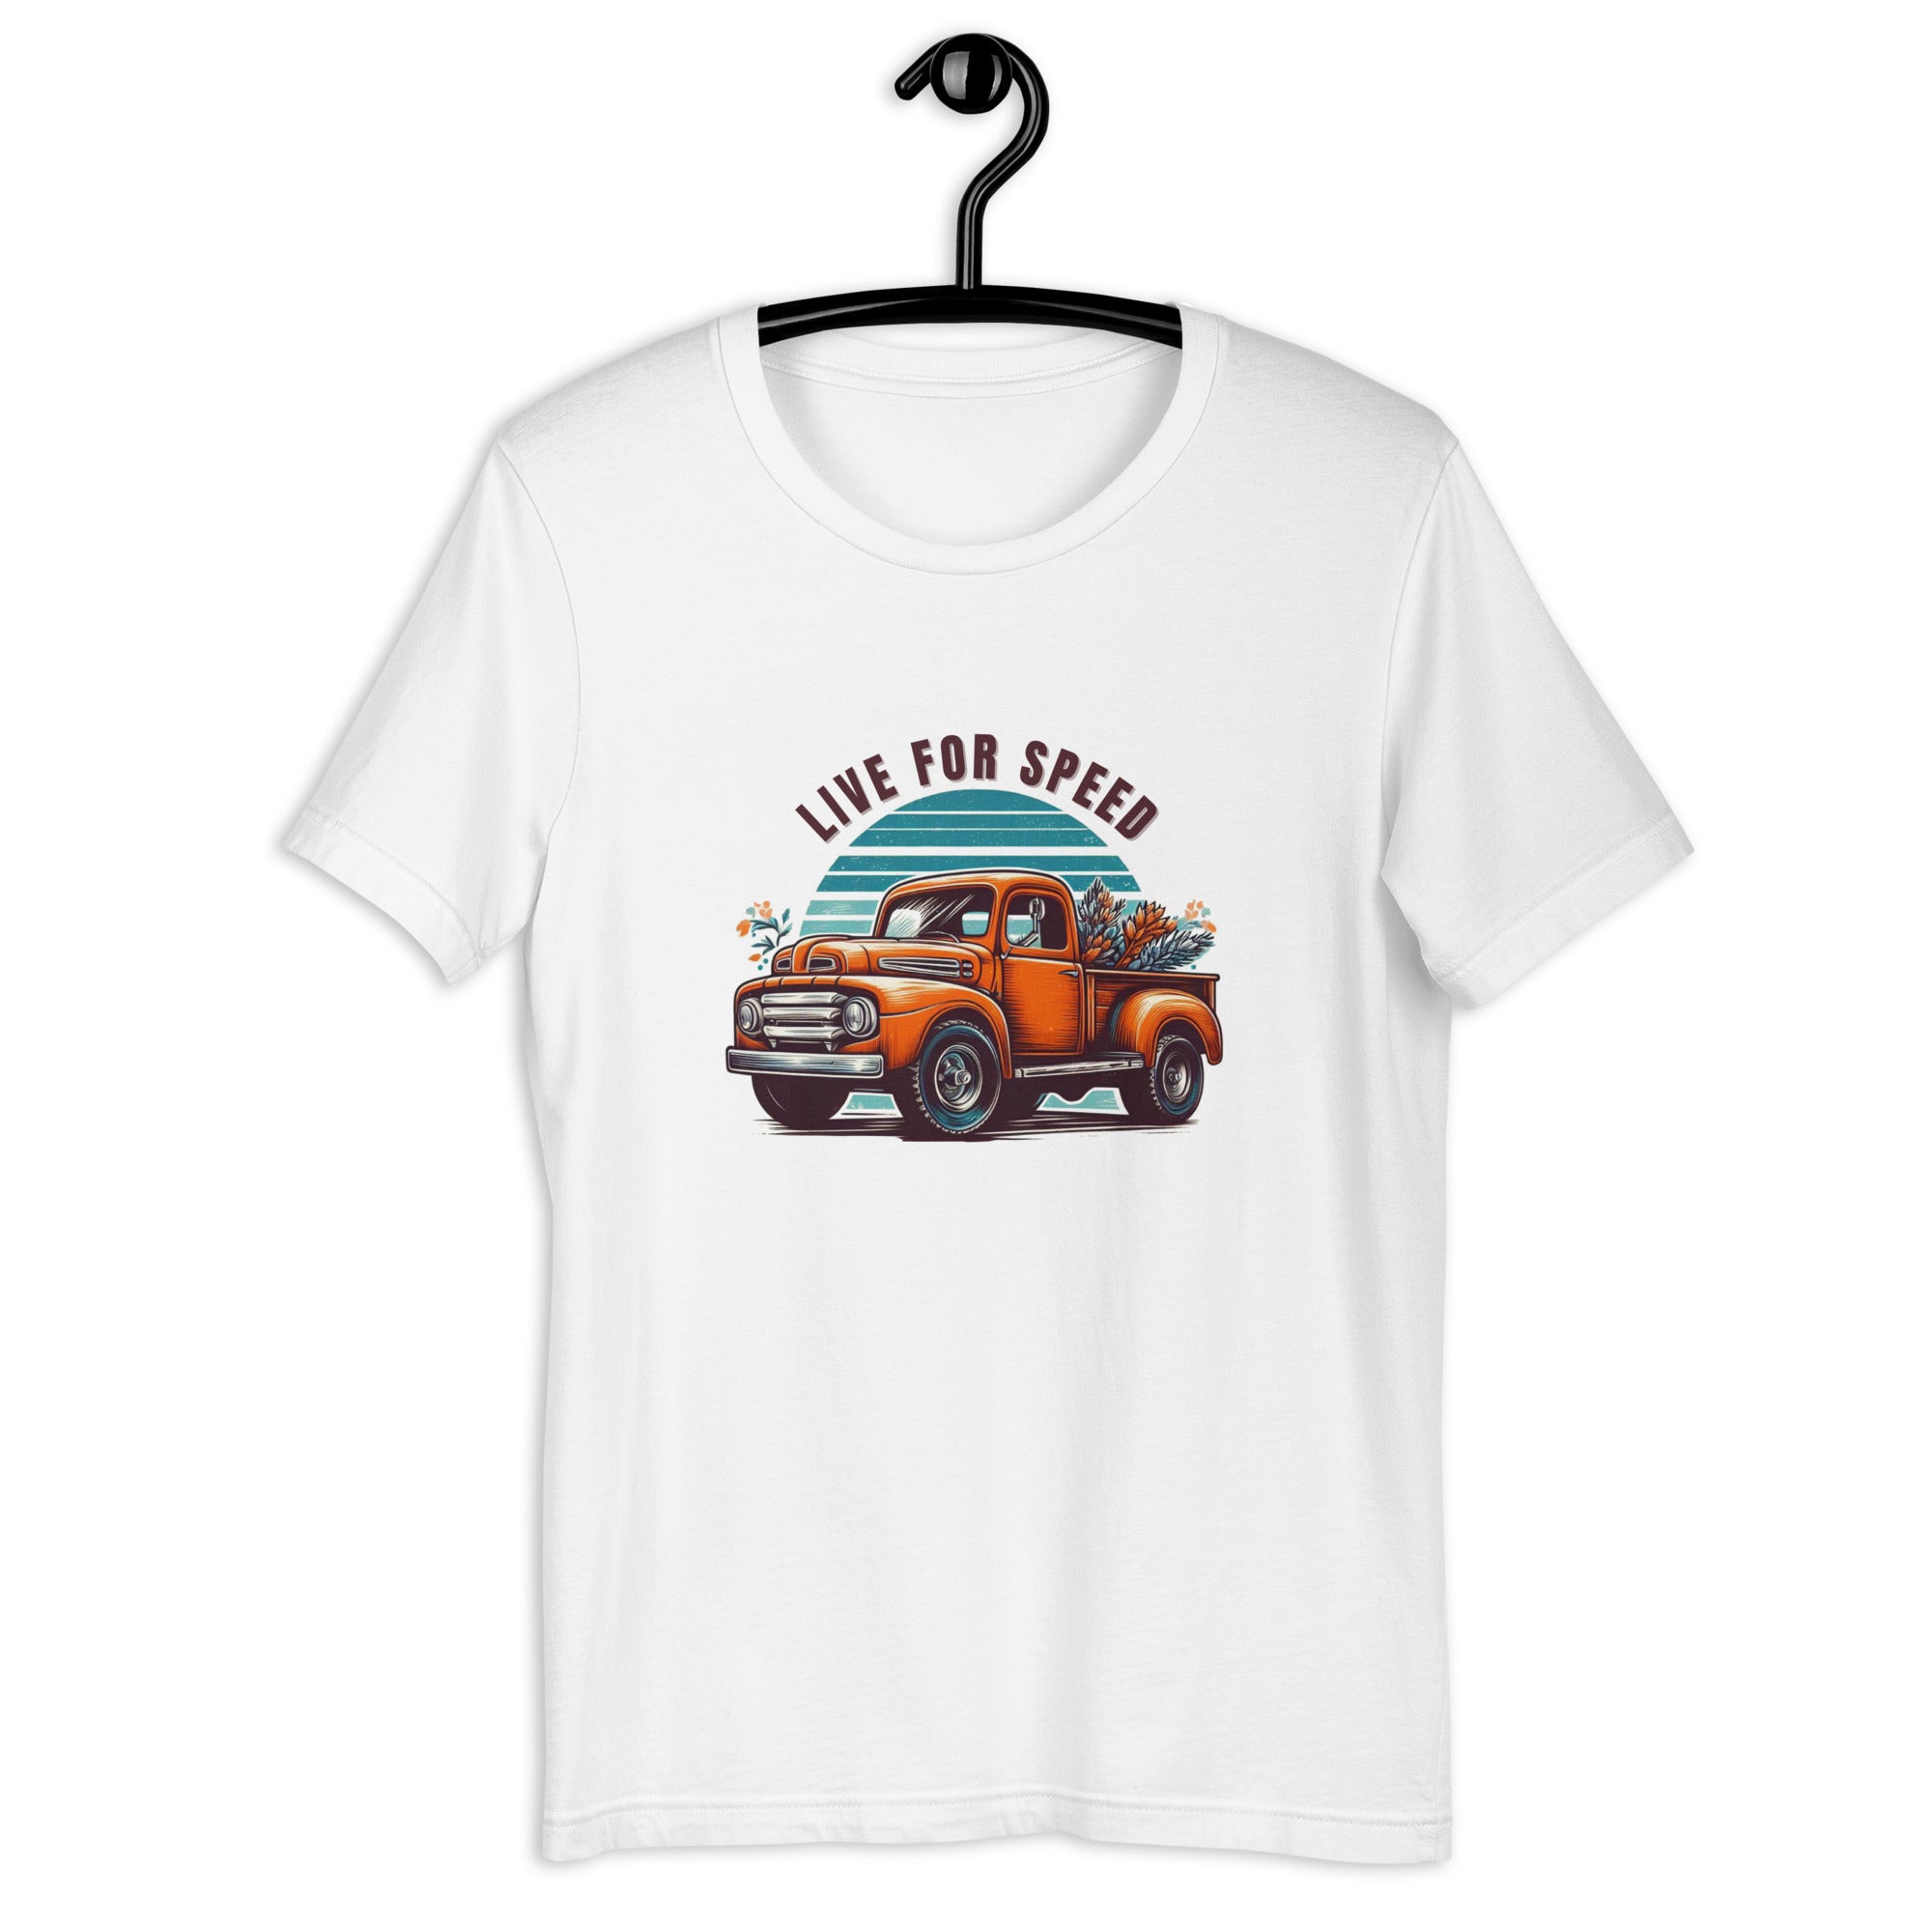 Live for Speed Trucker T-shirt for Men - POD Sarto